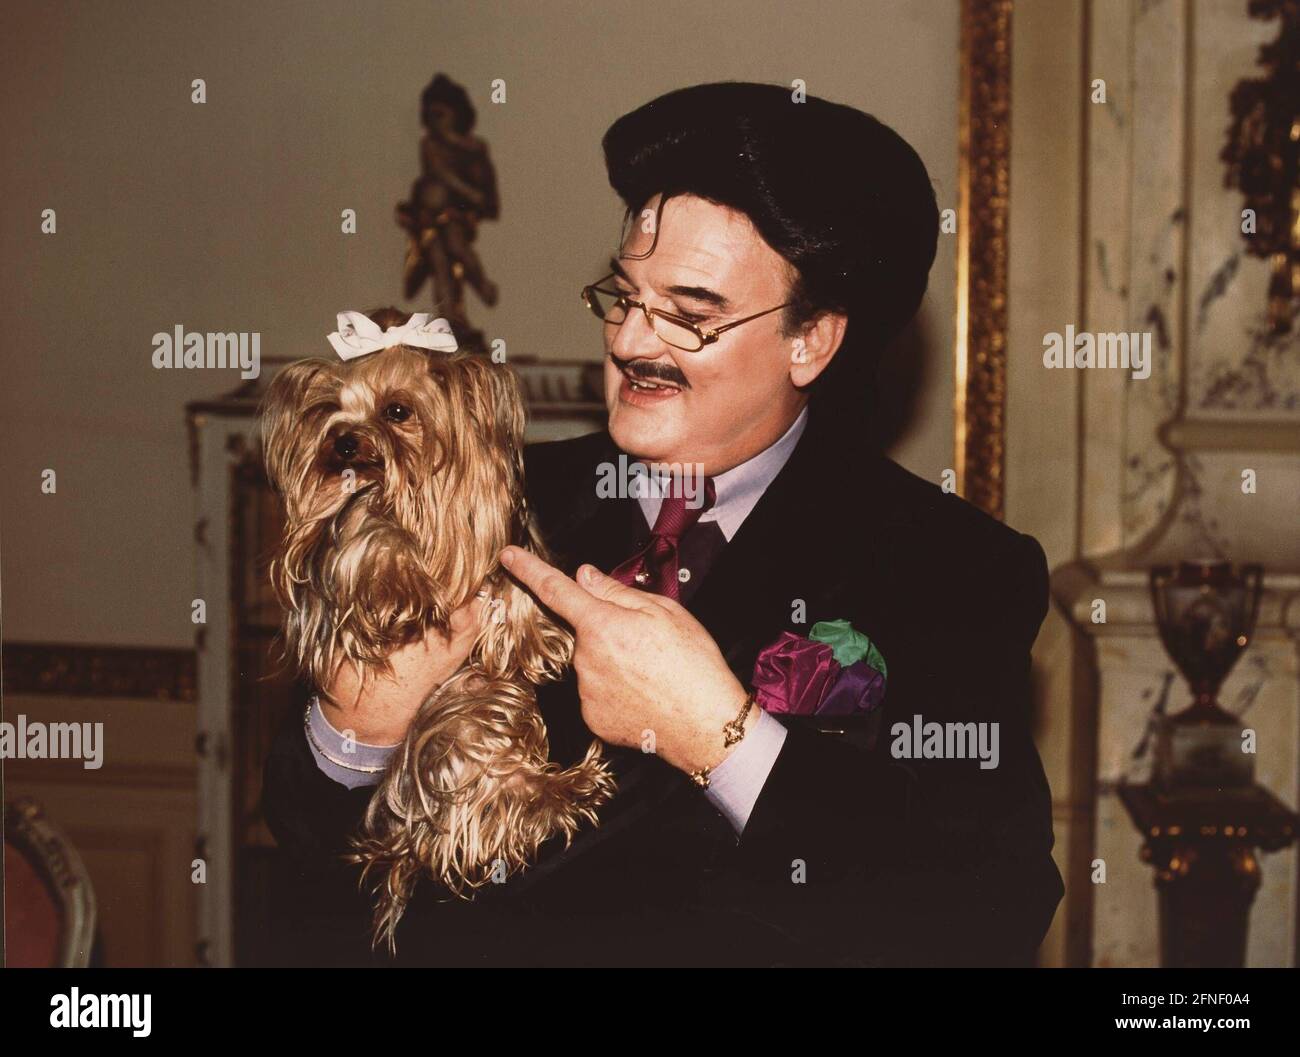 Rudolph Moshammer, Modedesigner, mit seinem Hund Daisy. [Automatisierte  Übersetzung] Stockfotografie - Alamy